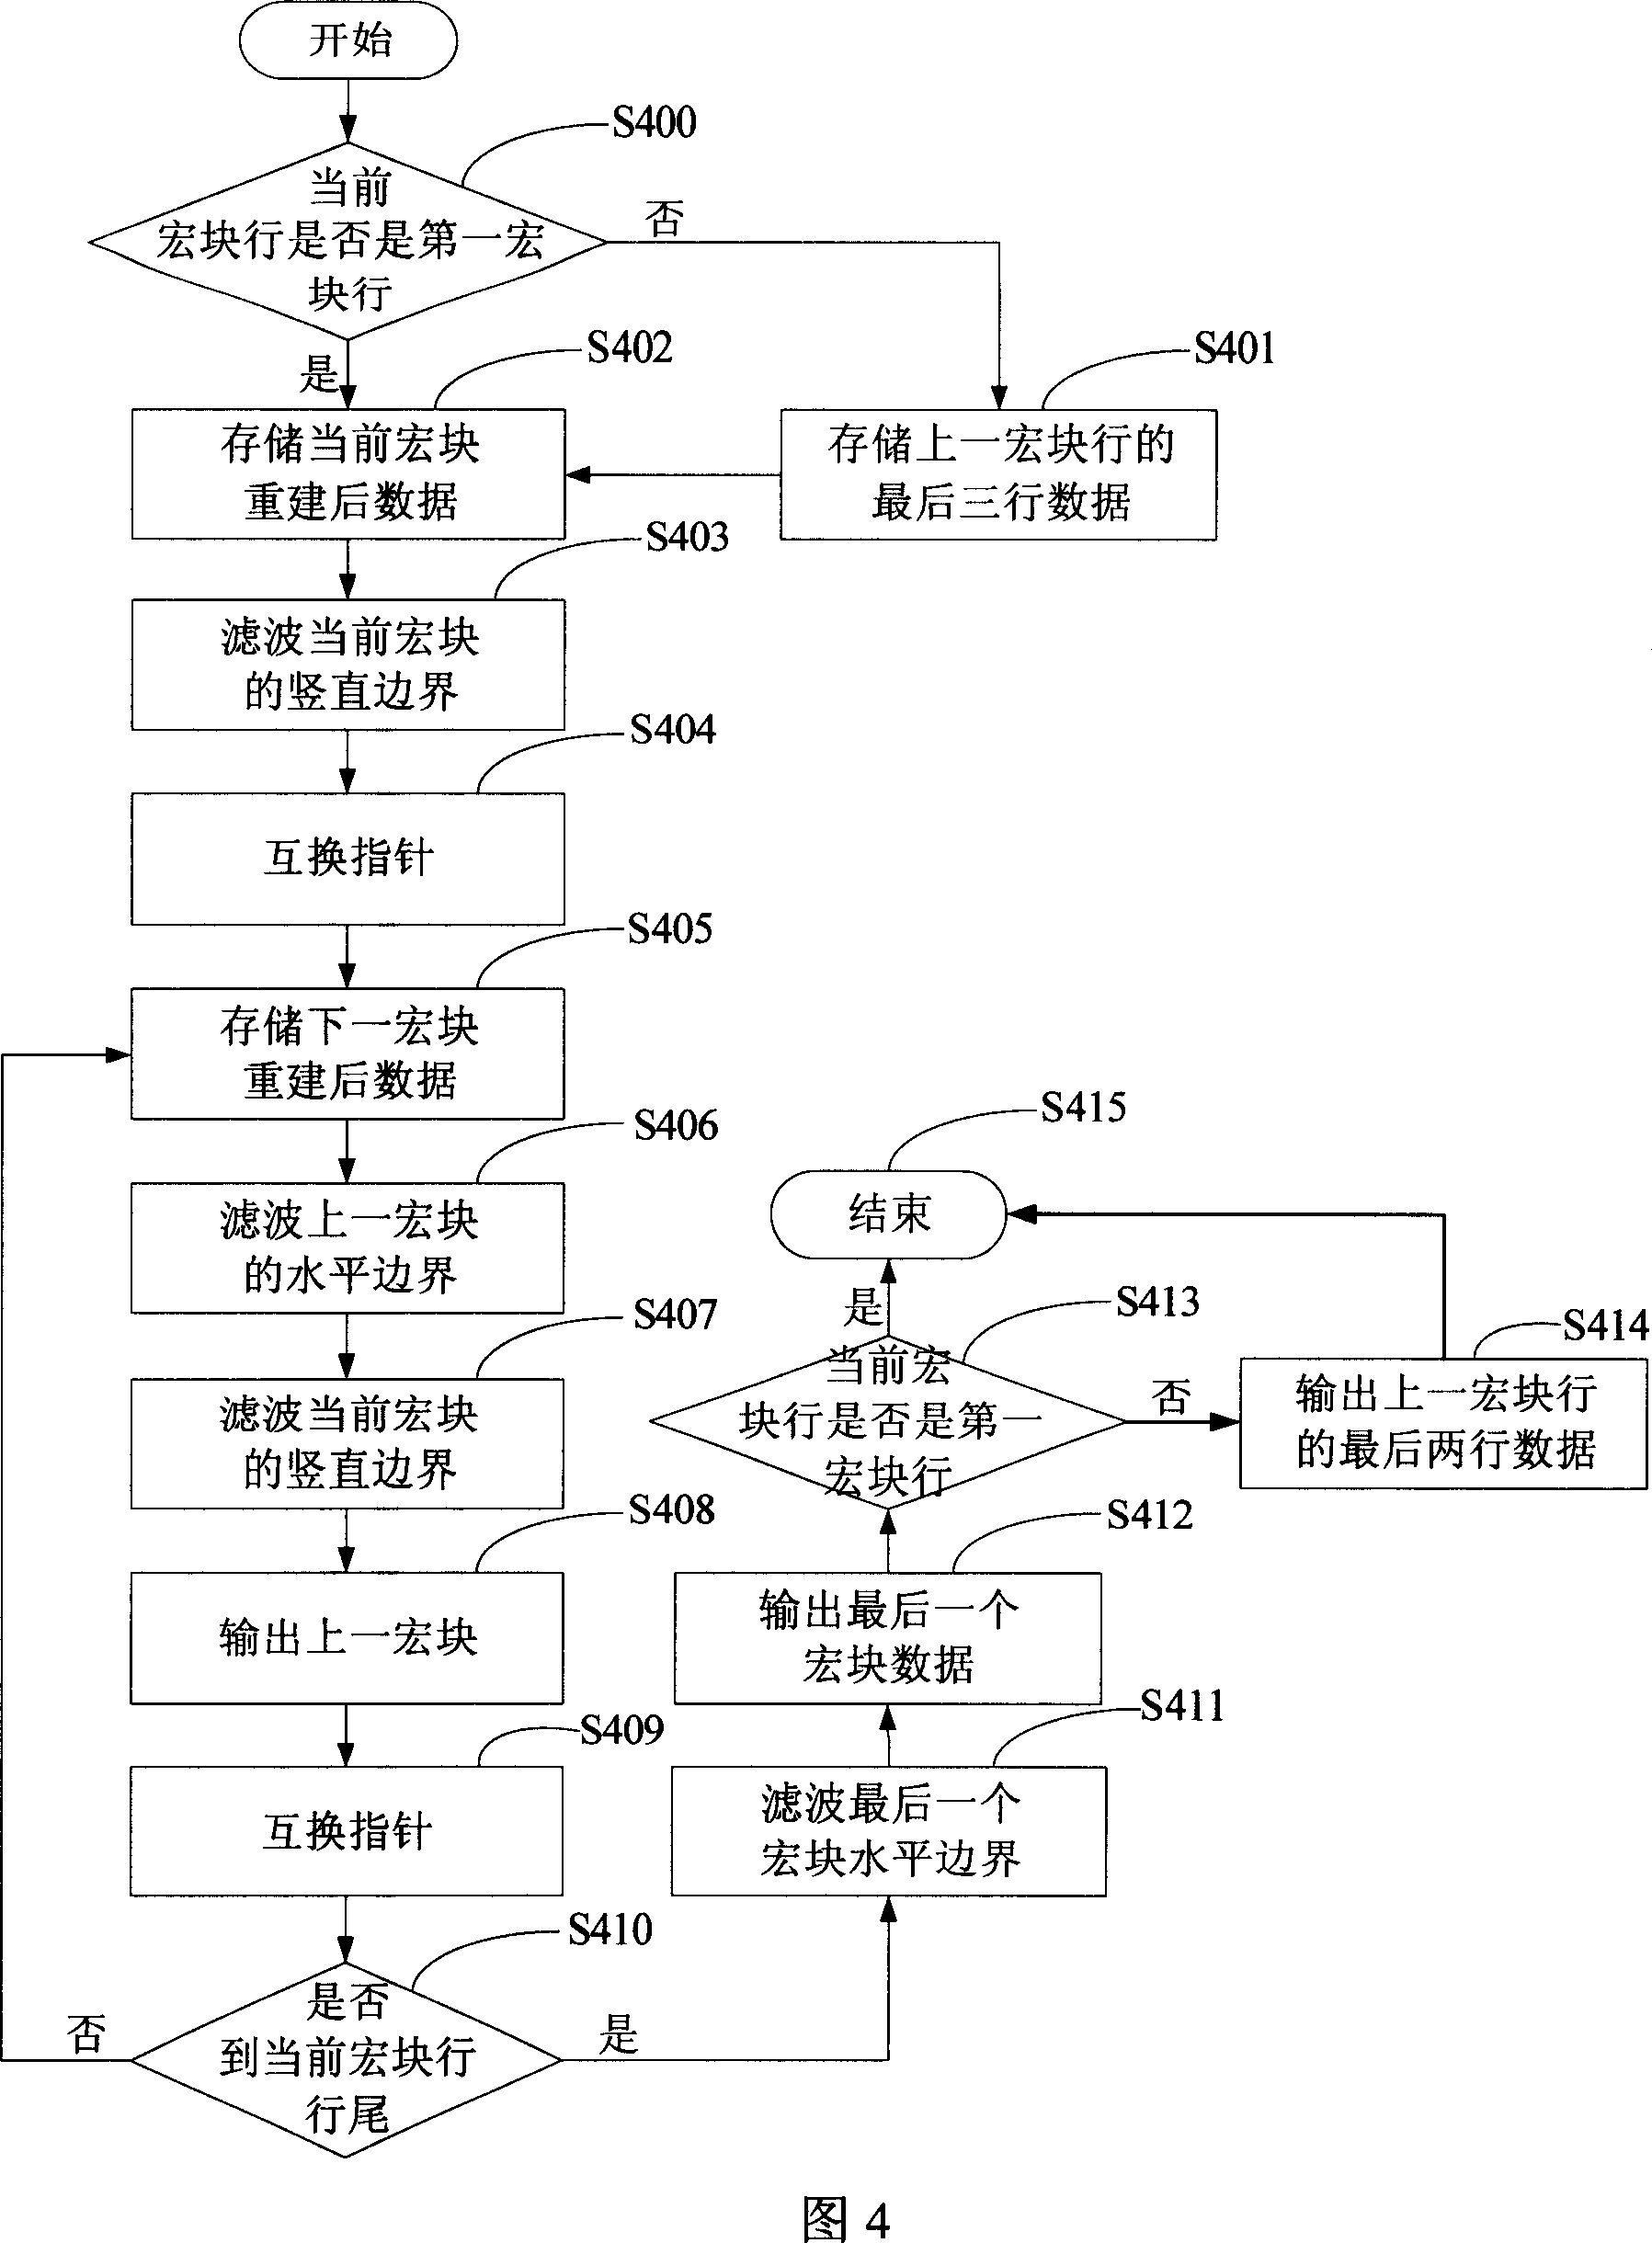 Loop circuit filtering method